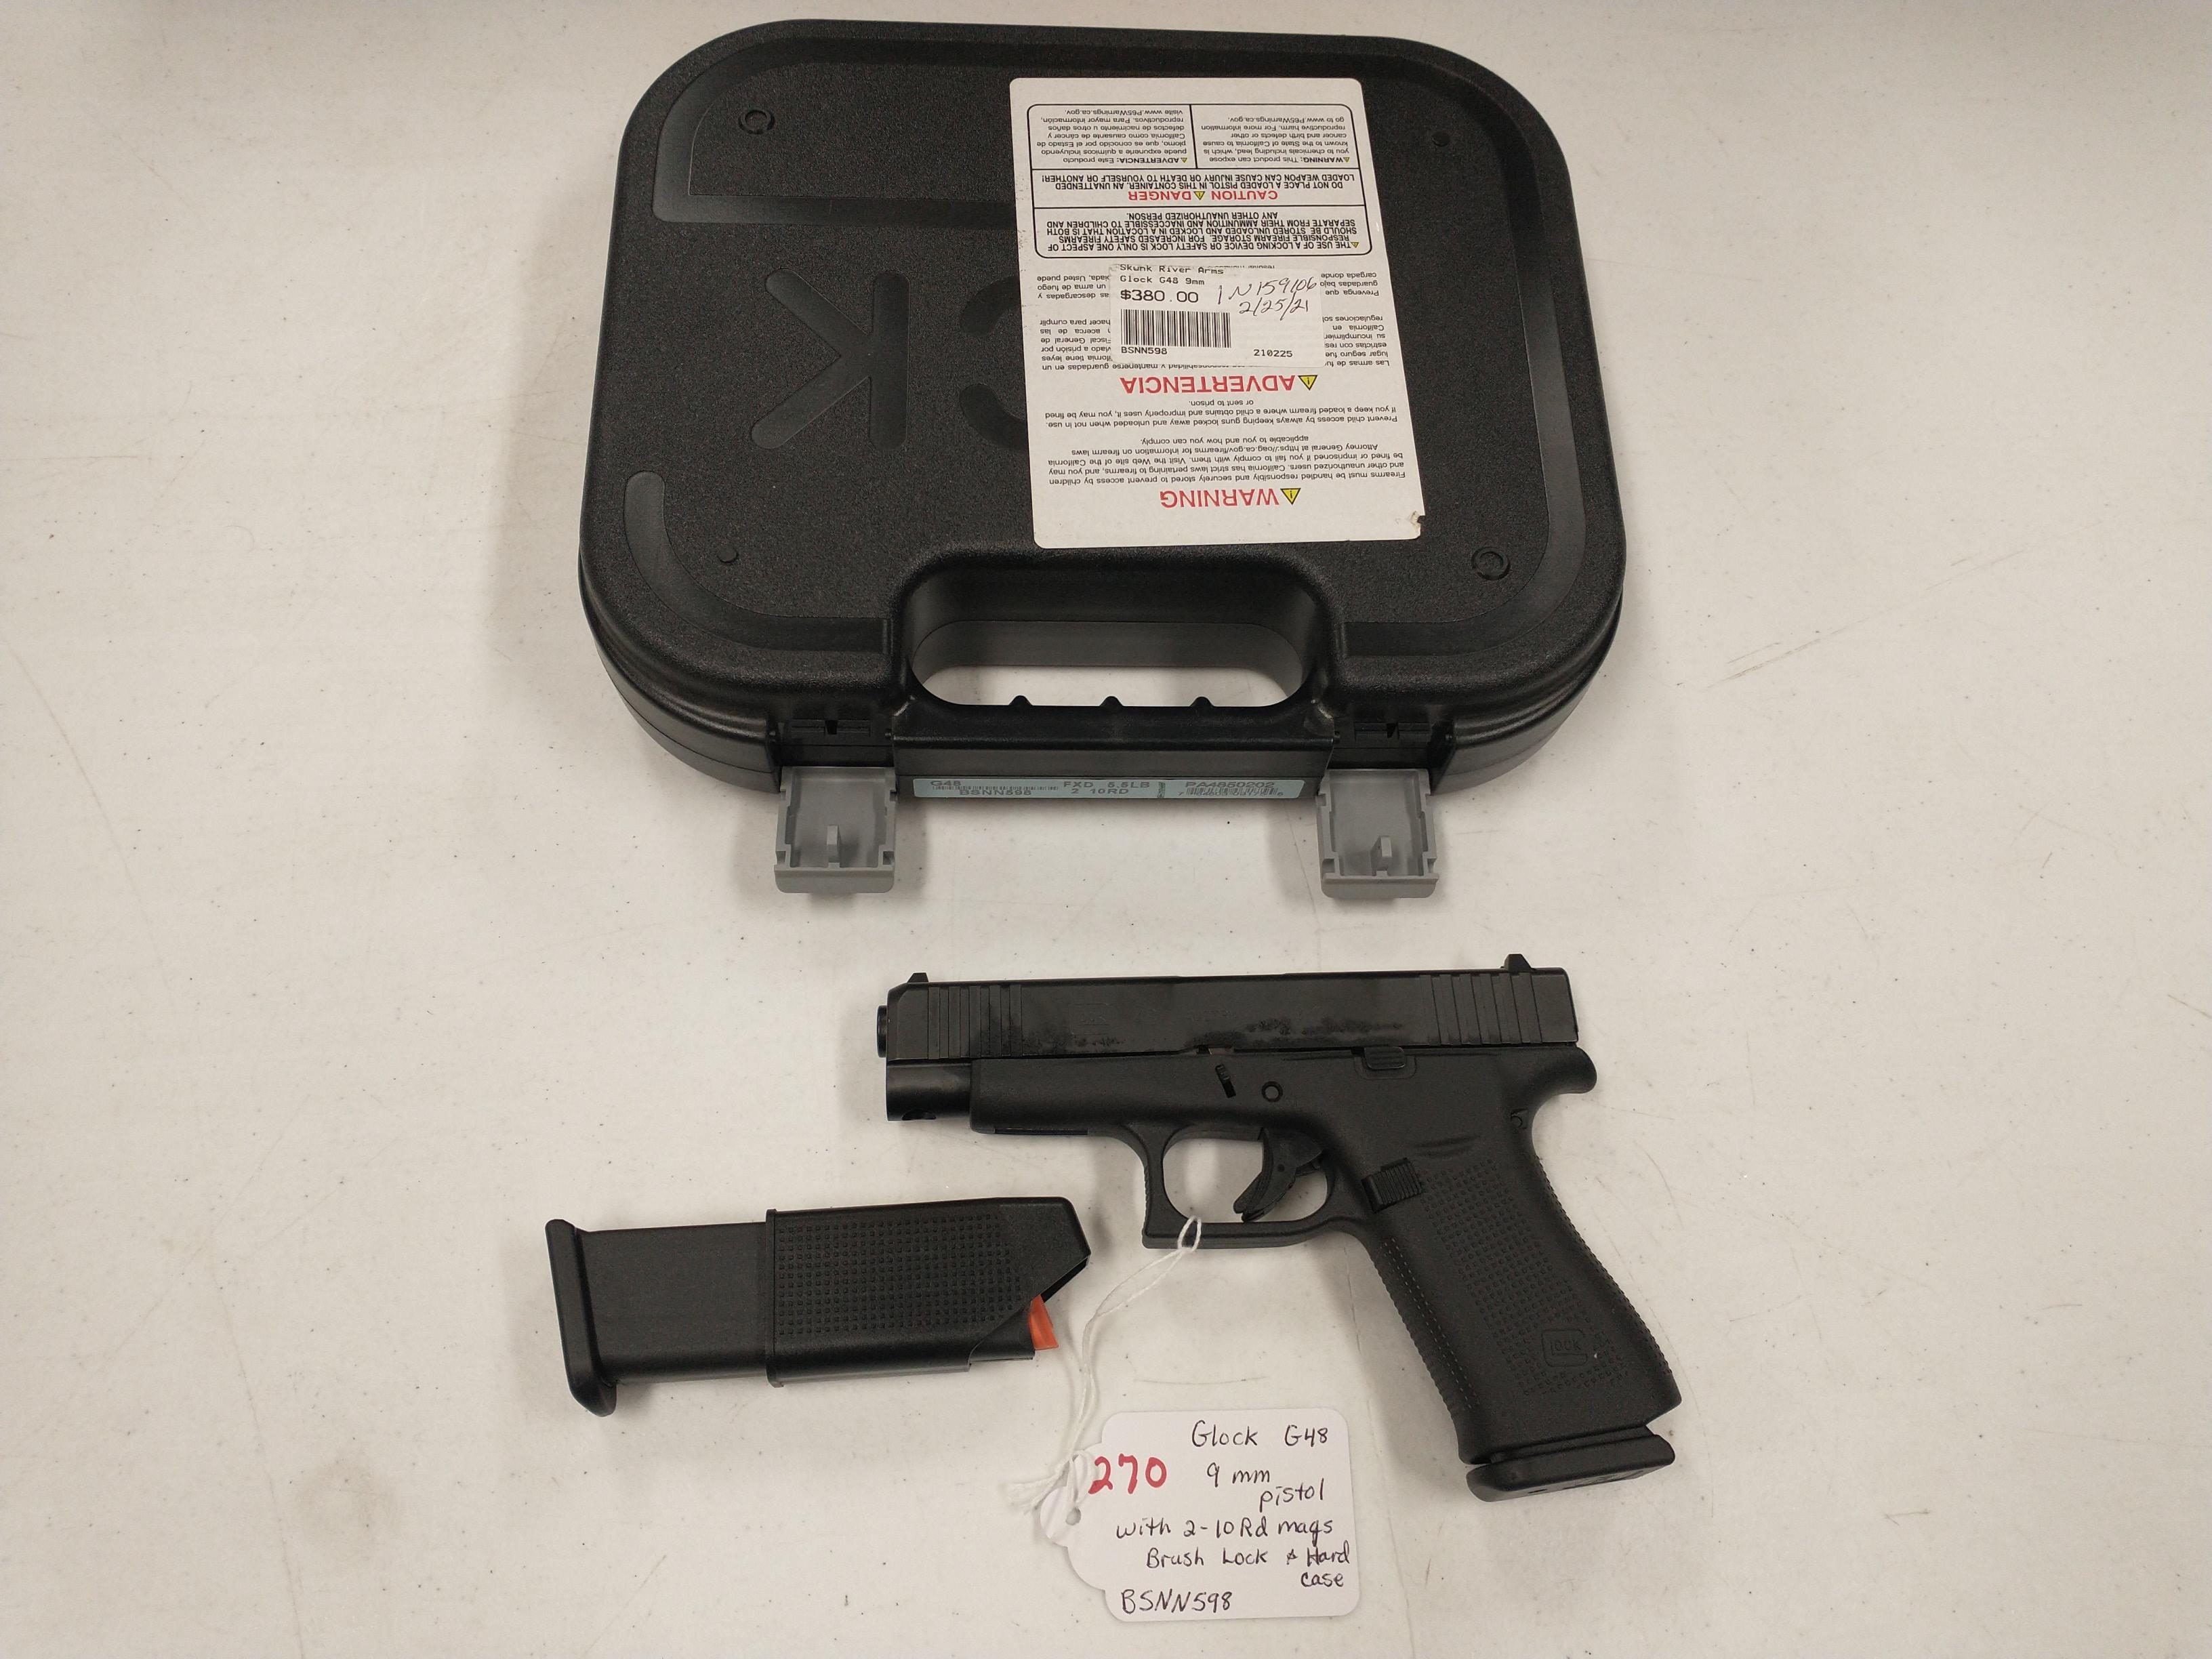 Glock G48 9mm Pistol